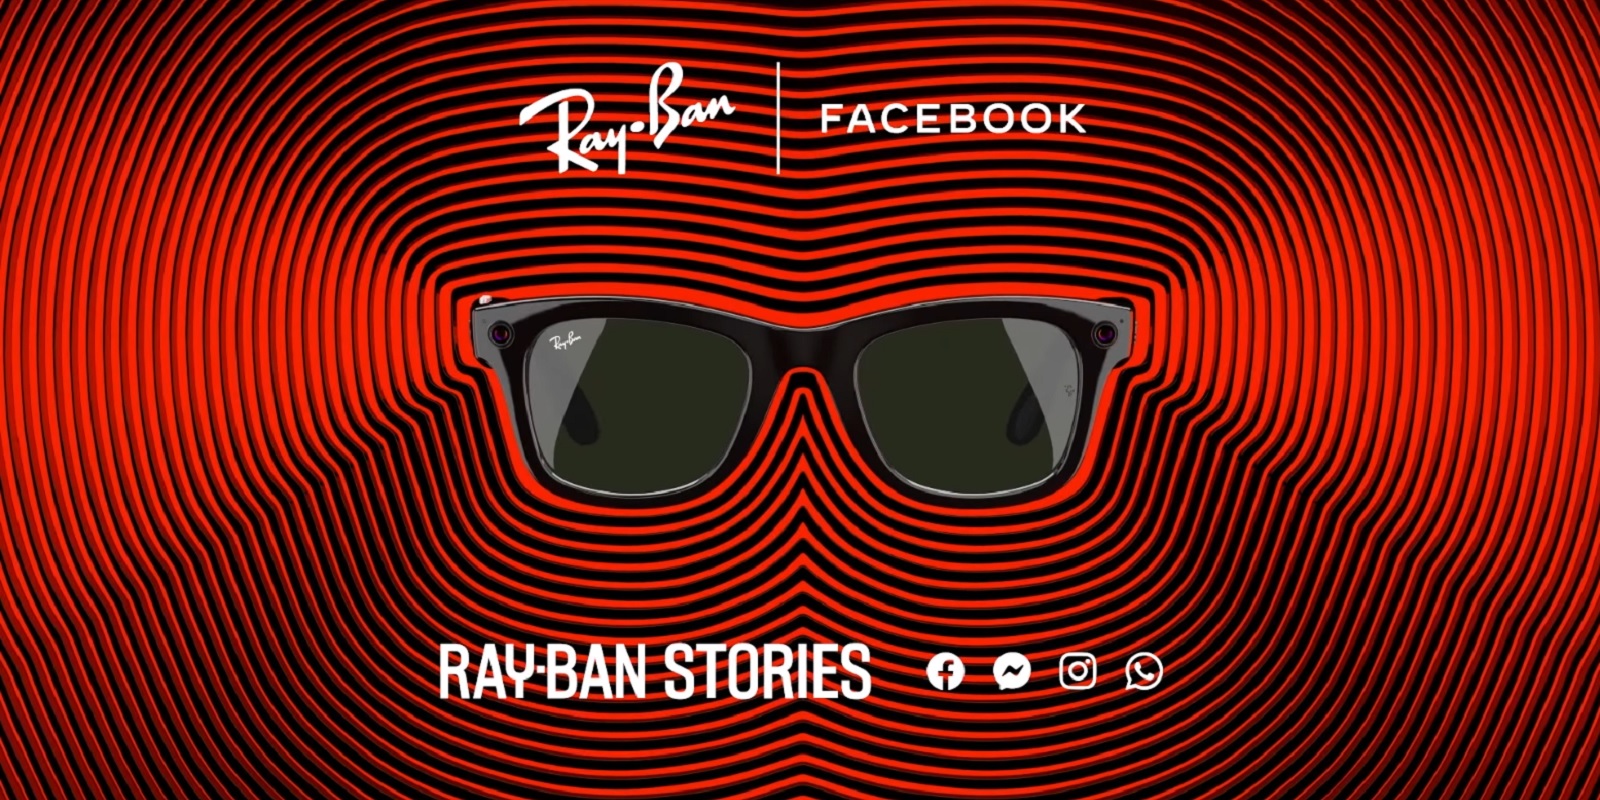 Ray-Ban Stories to wilk w owczej skórze. Wilk o imieniu Facebook